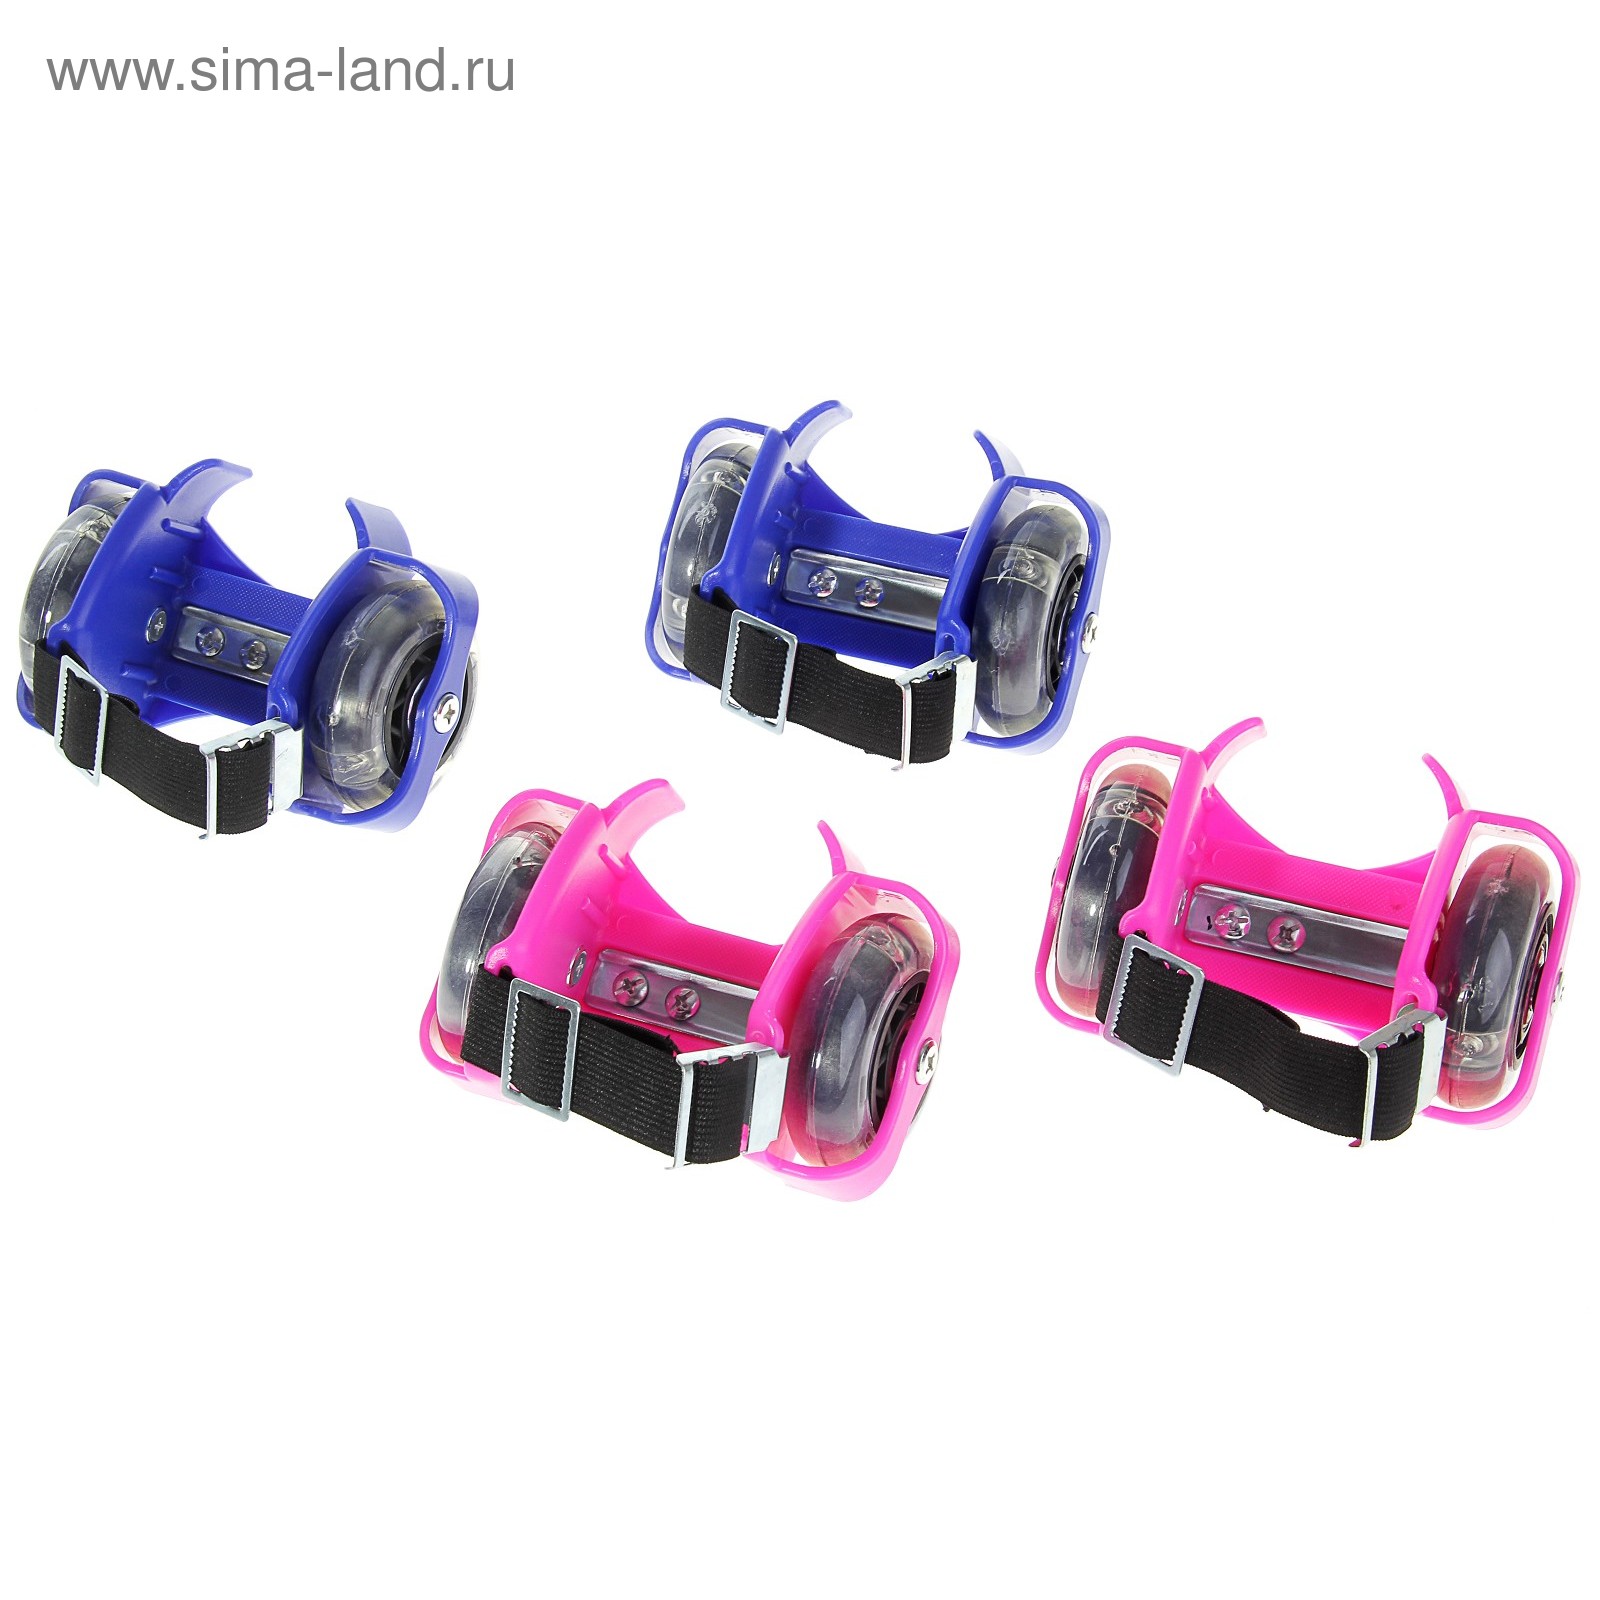 Ролики раздвижные для обуви, мини, светящиеся колеса, РVC, d=70 мм, до 70 кг, ширина 6-10 см, МИКС